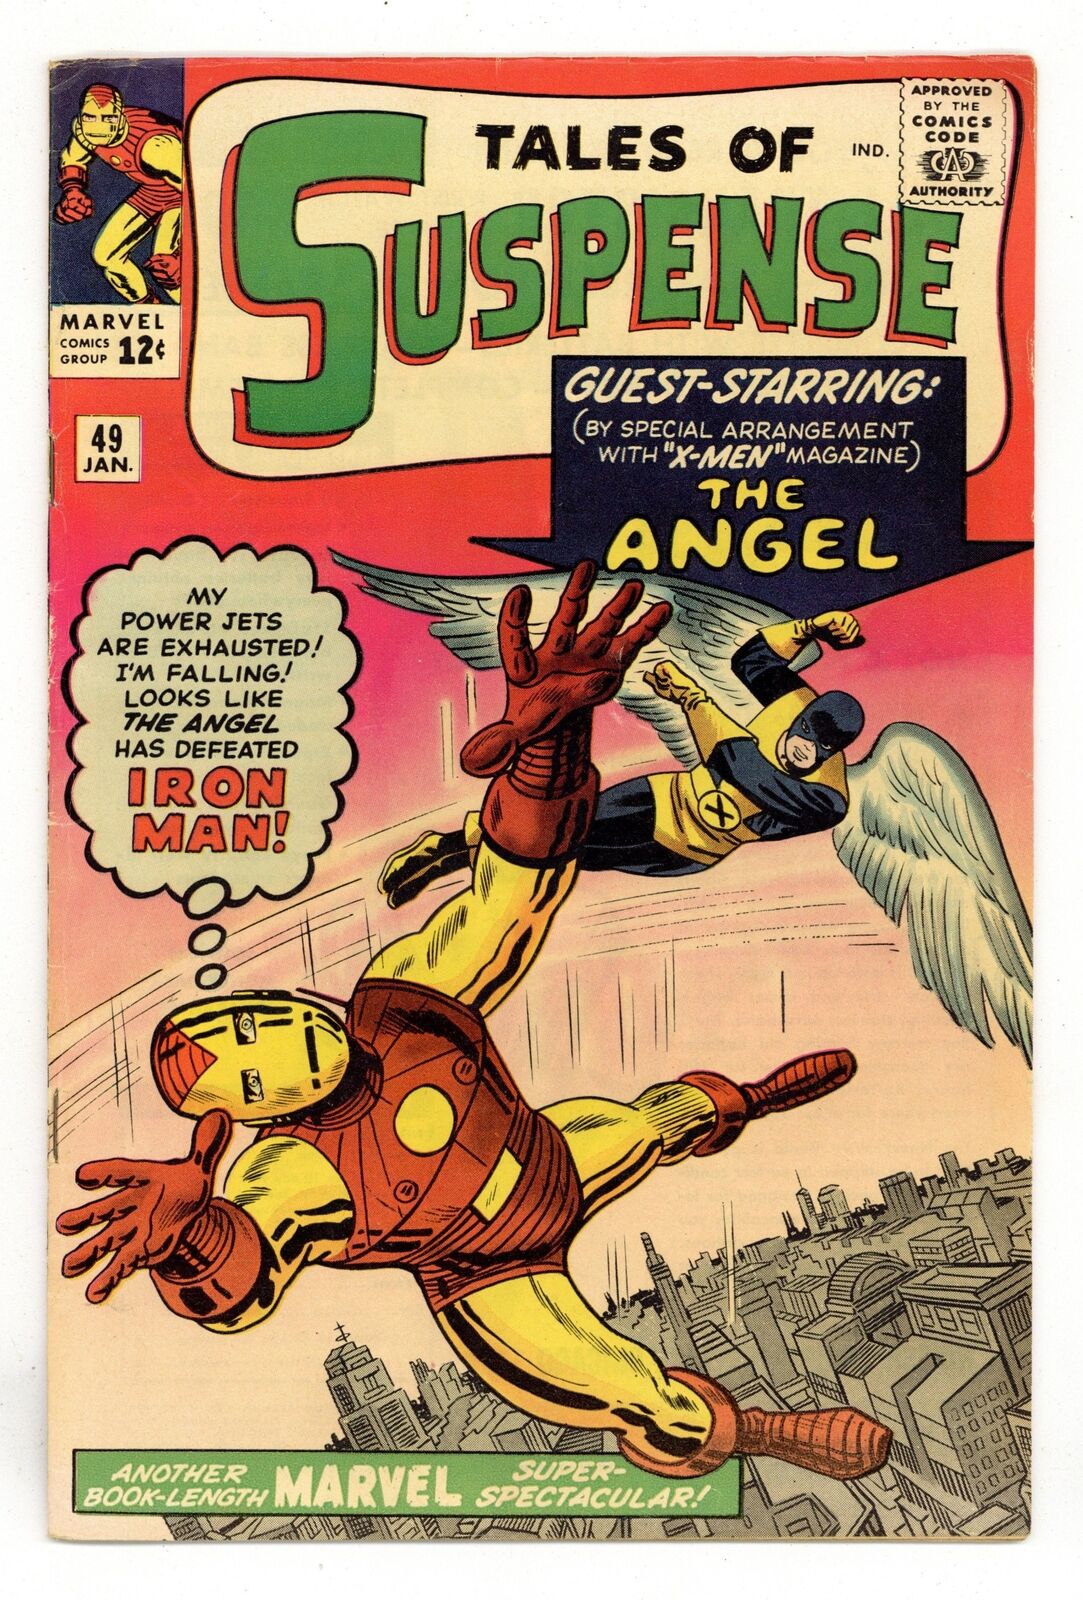 Tales of Suspense #49 VG+ 4.5 1964 1st X-Men crossover